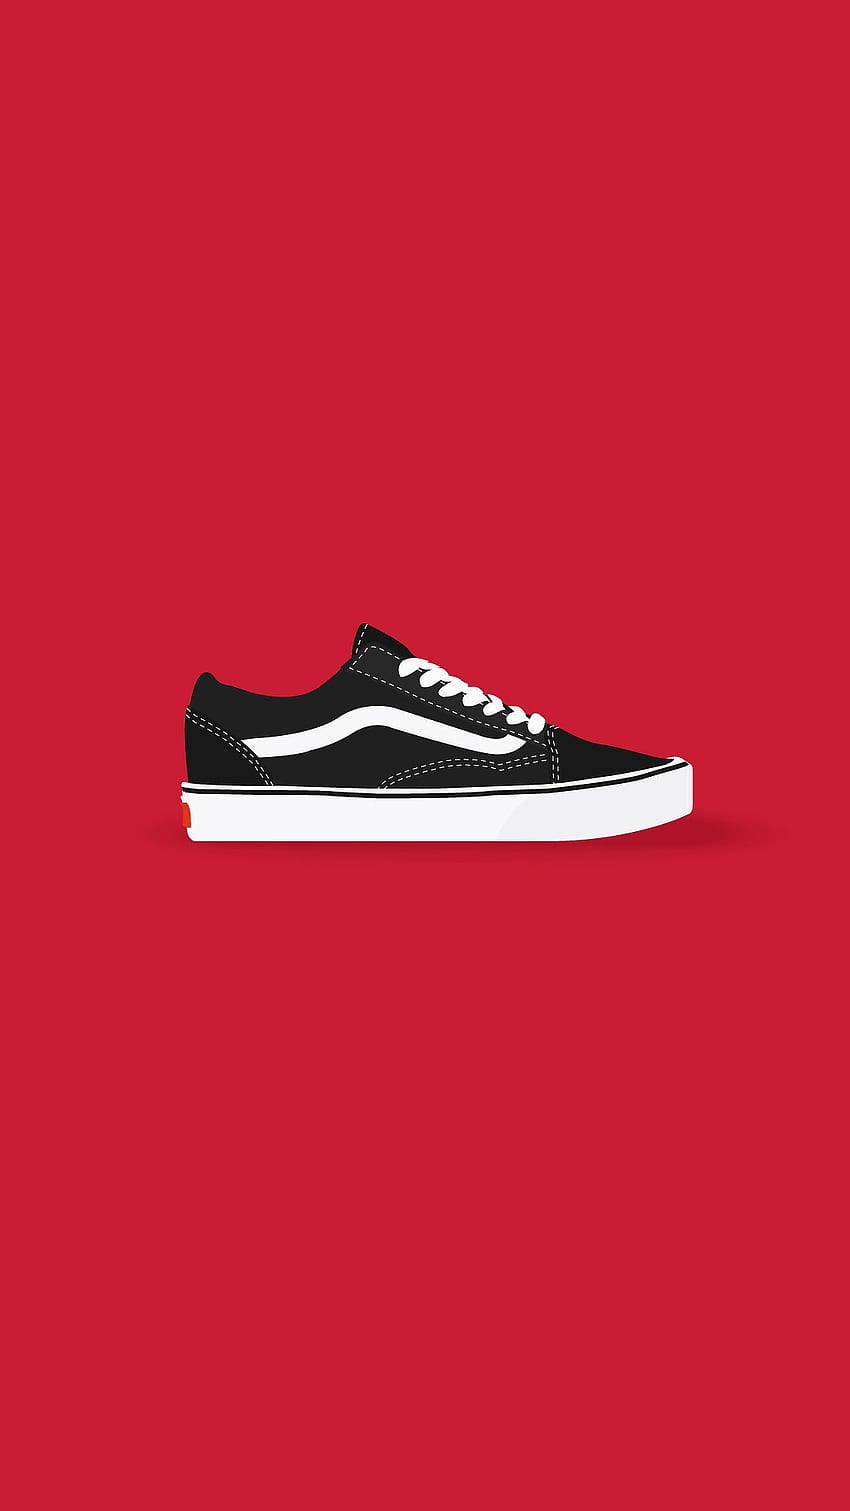 Vans Old Skool di Adobe Illustrator pada 2019. Sepatu Kets, Sepatu Vans wallpaper ponsel HD